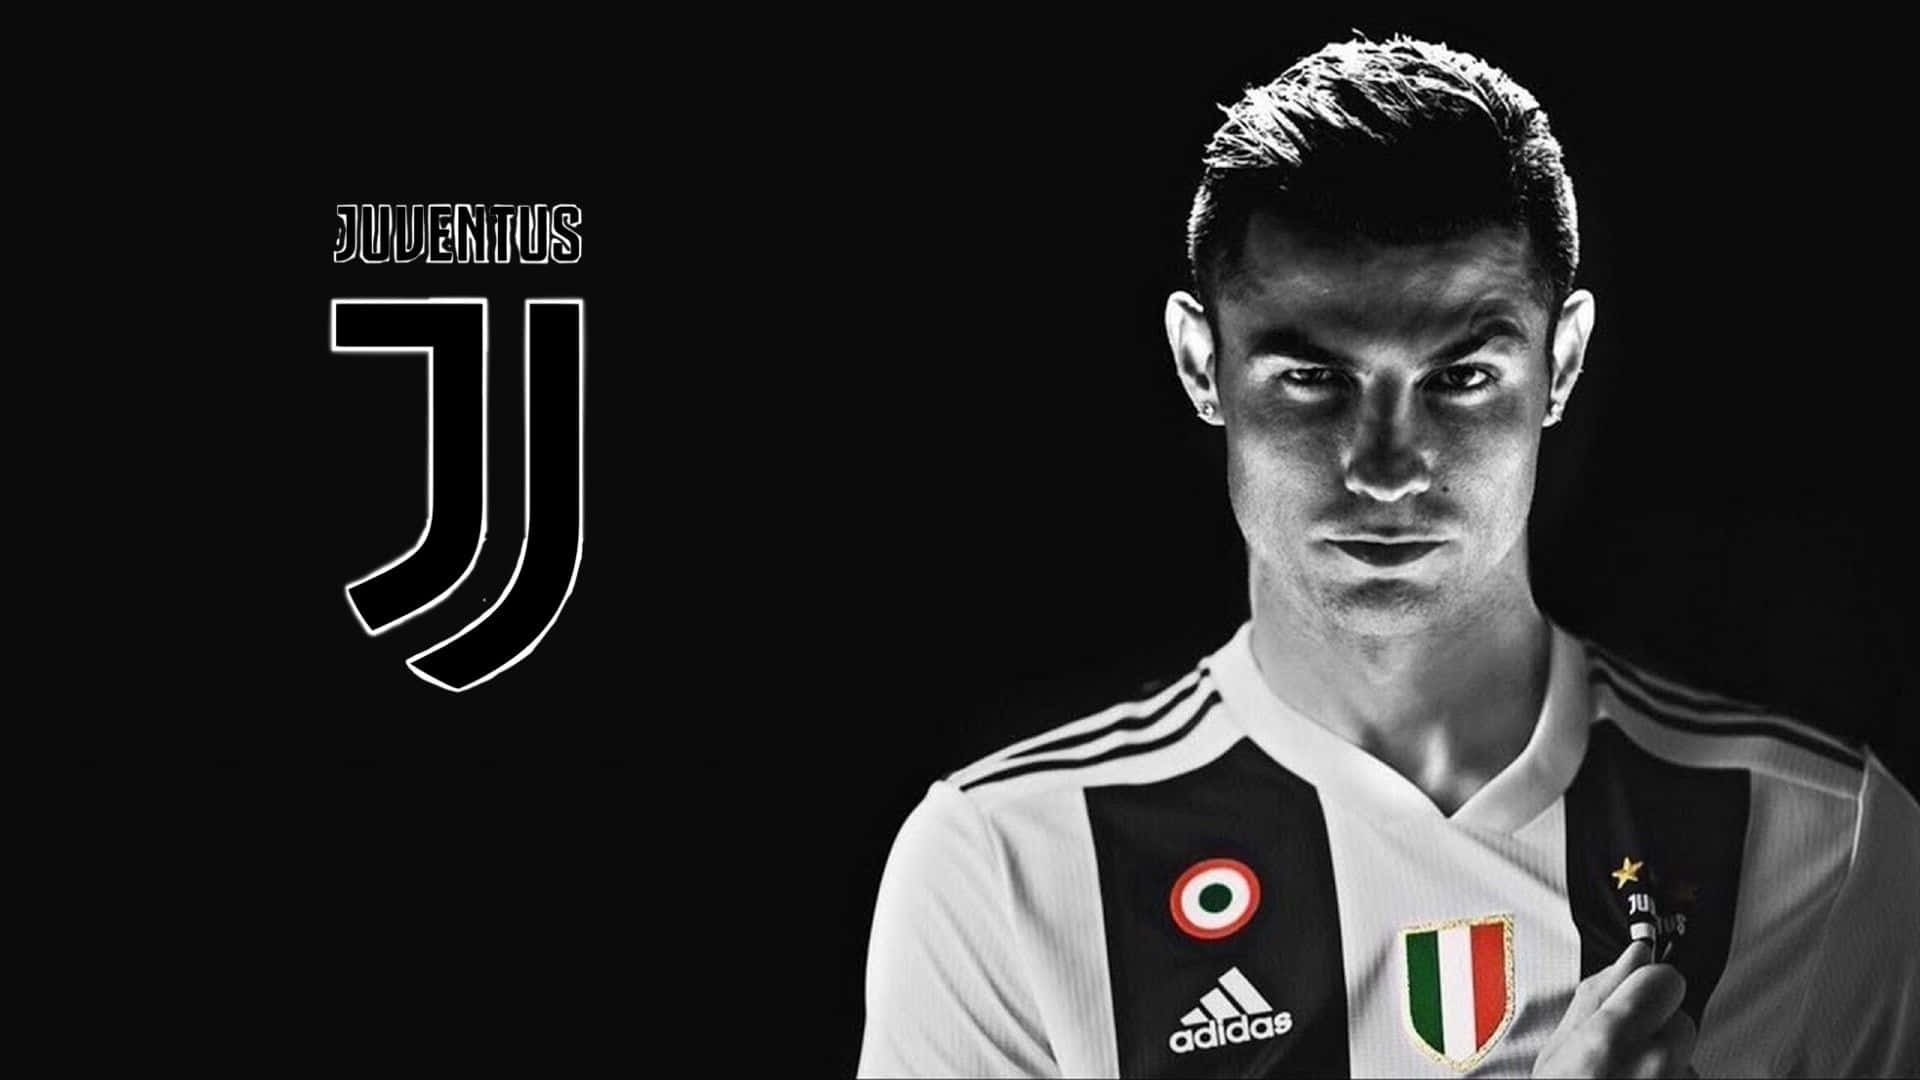 Iliconico Bianco E Nero Del Juventus Fc